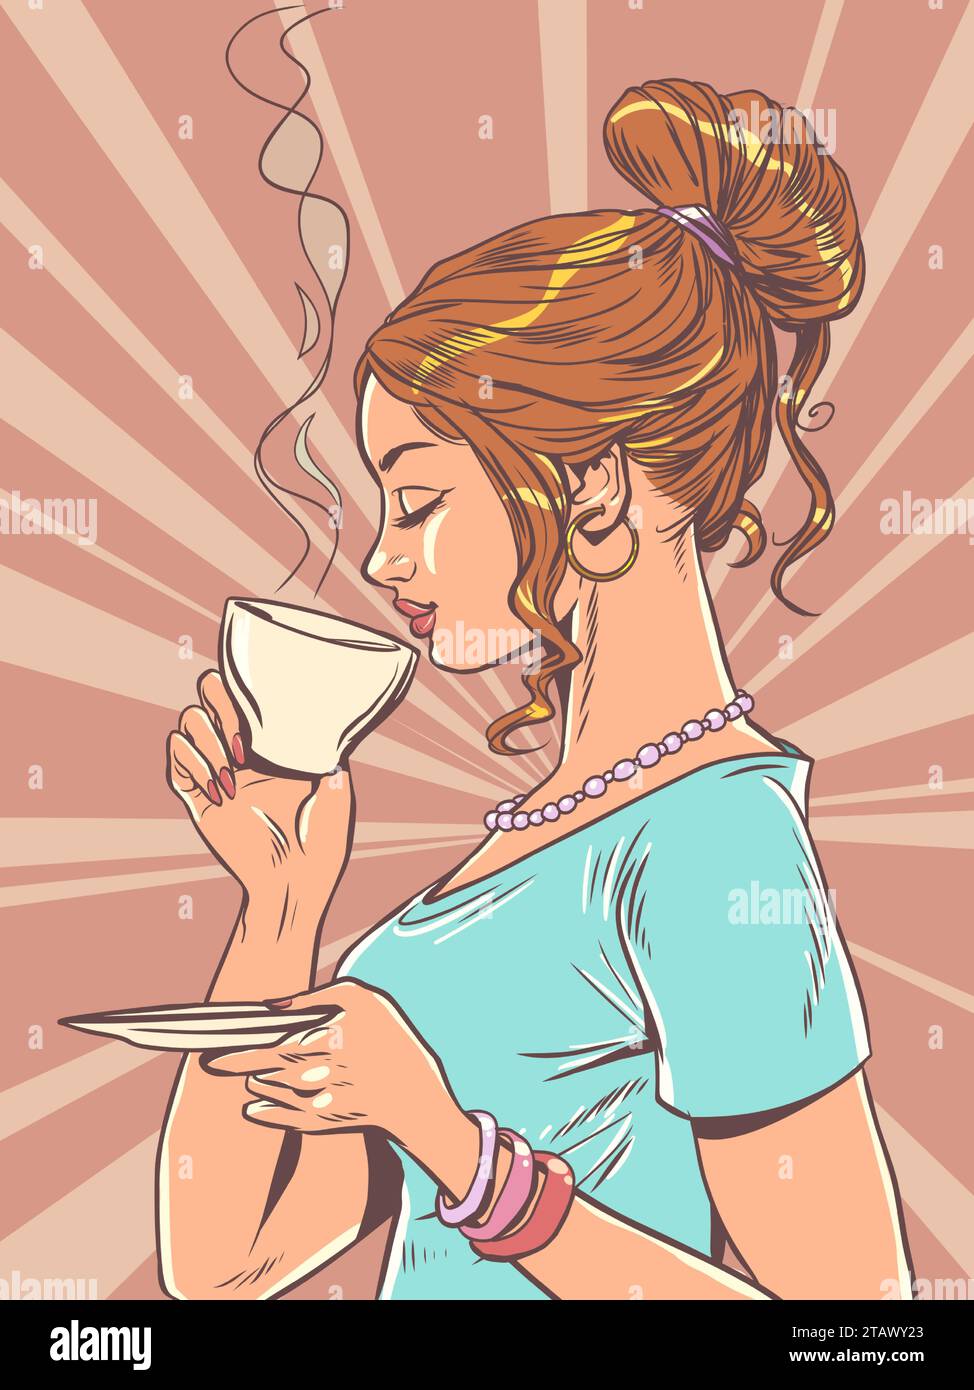 Werbung für ein neues Getränk in einem Café oder Restaurant. Das Mädchen trinkt eine Tasse heißes Getränk. Banner für Kaffee- und Teeläden. Pop Art Retro Vektor Illu Stock Vektor